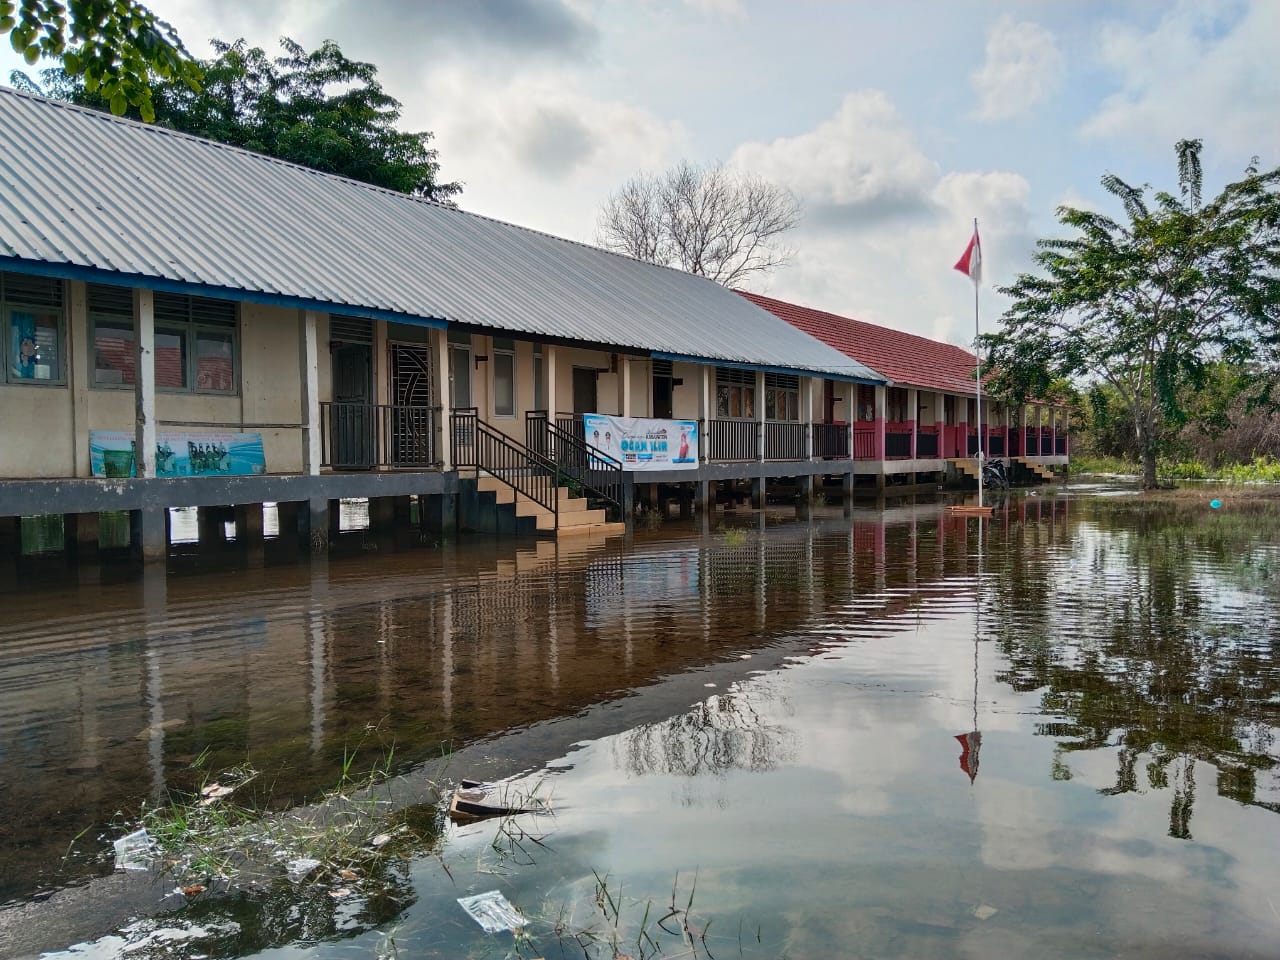 Gedung Sekolah Terdampak Banjir, Disdikbud Keluarkan surat Himbauan